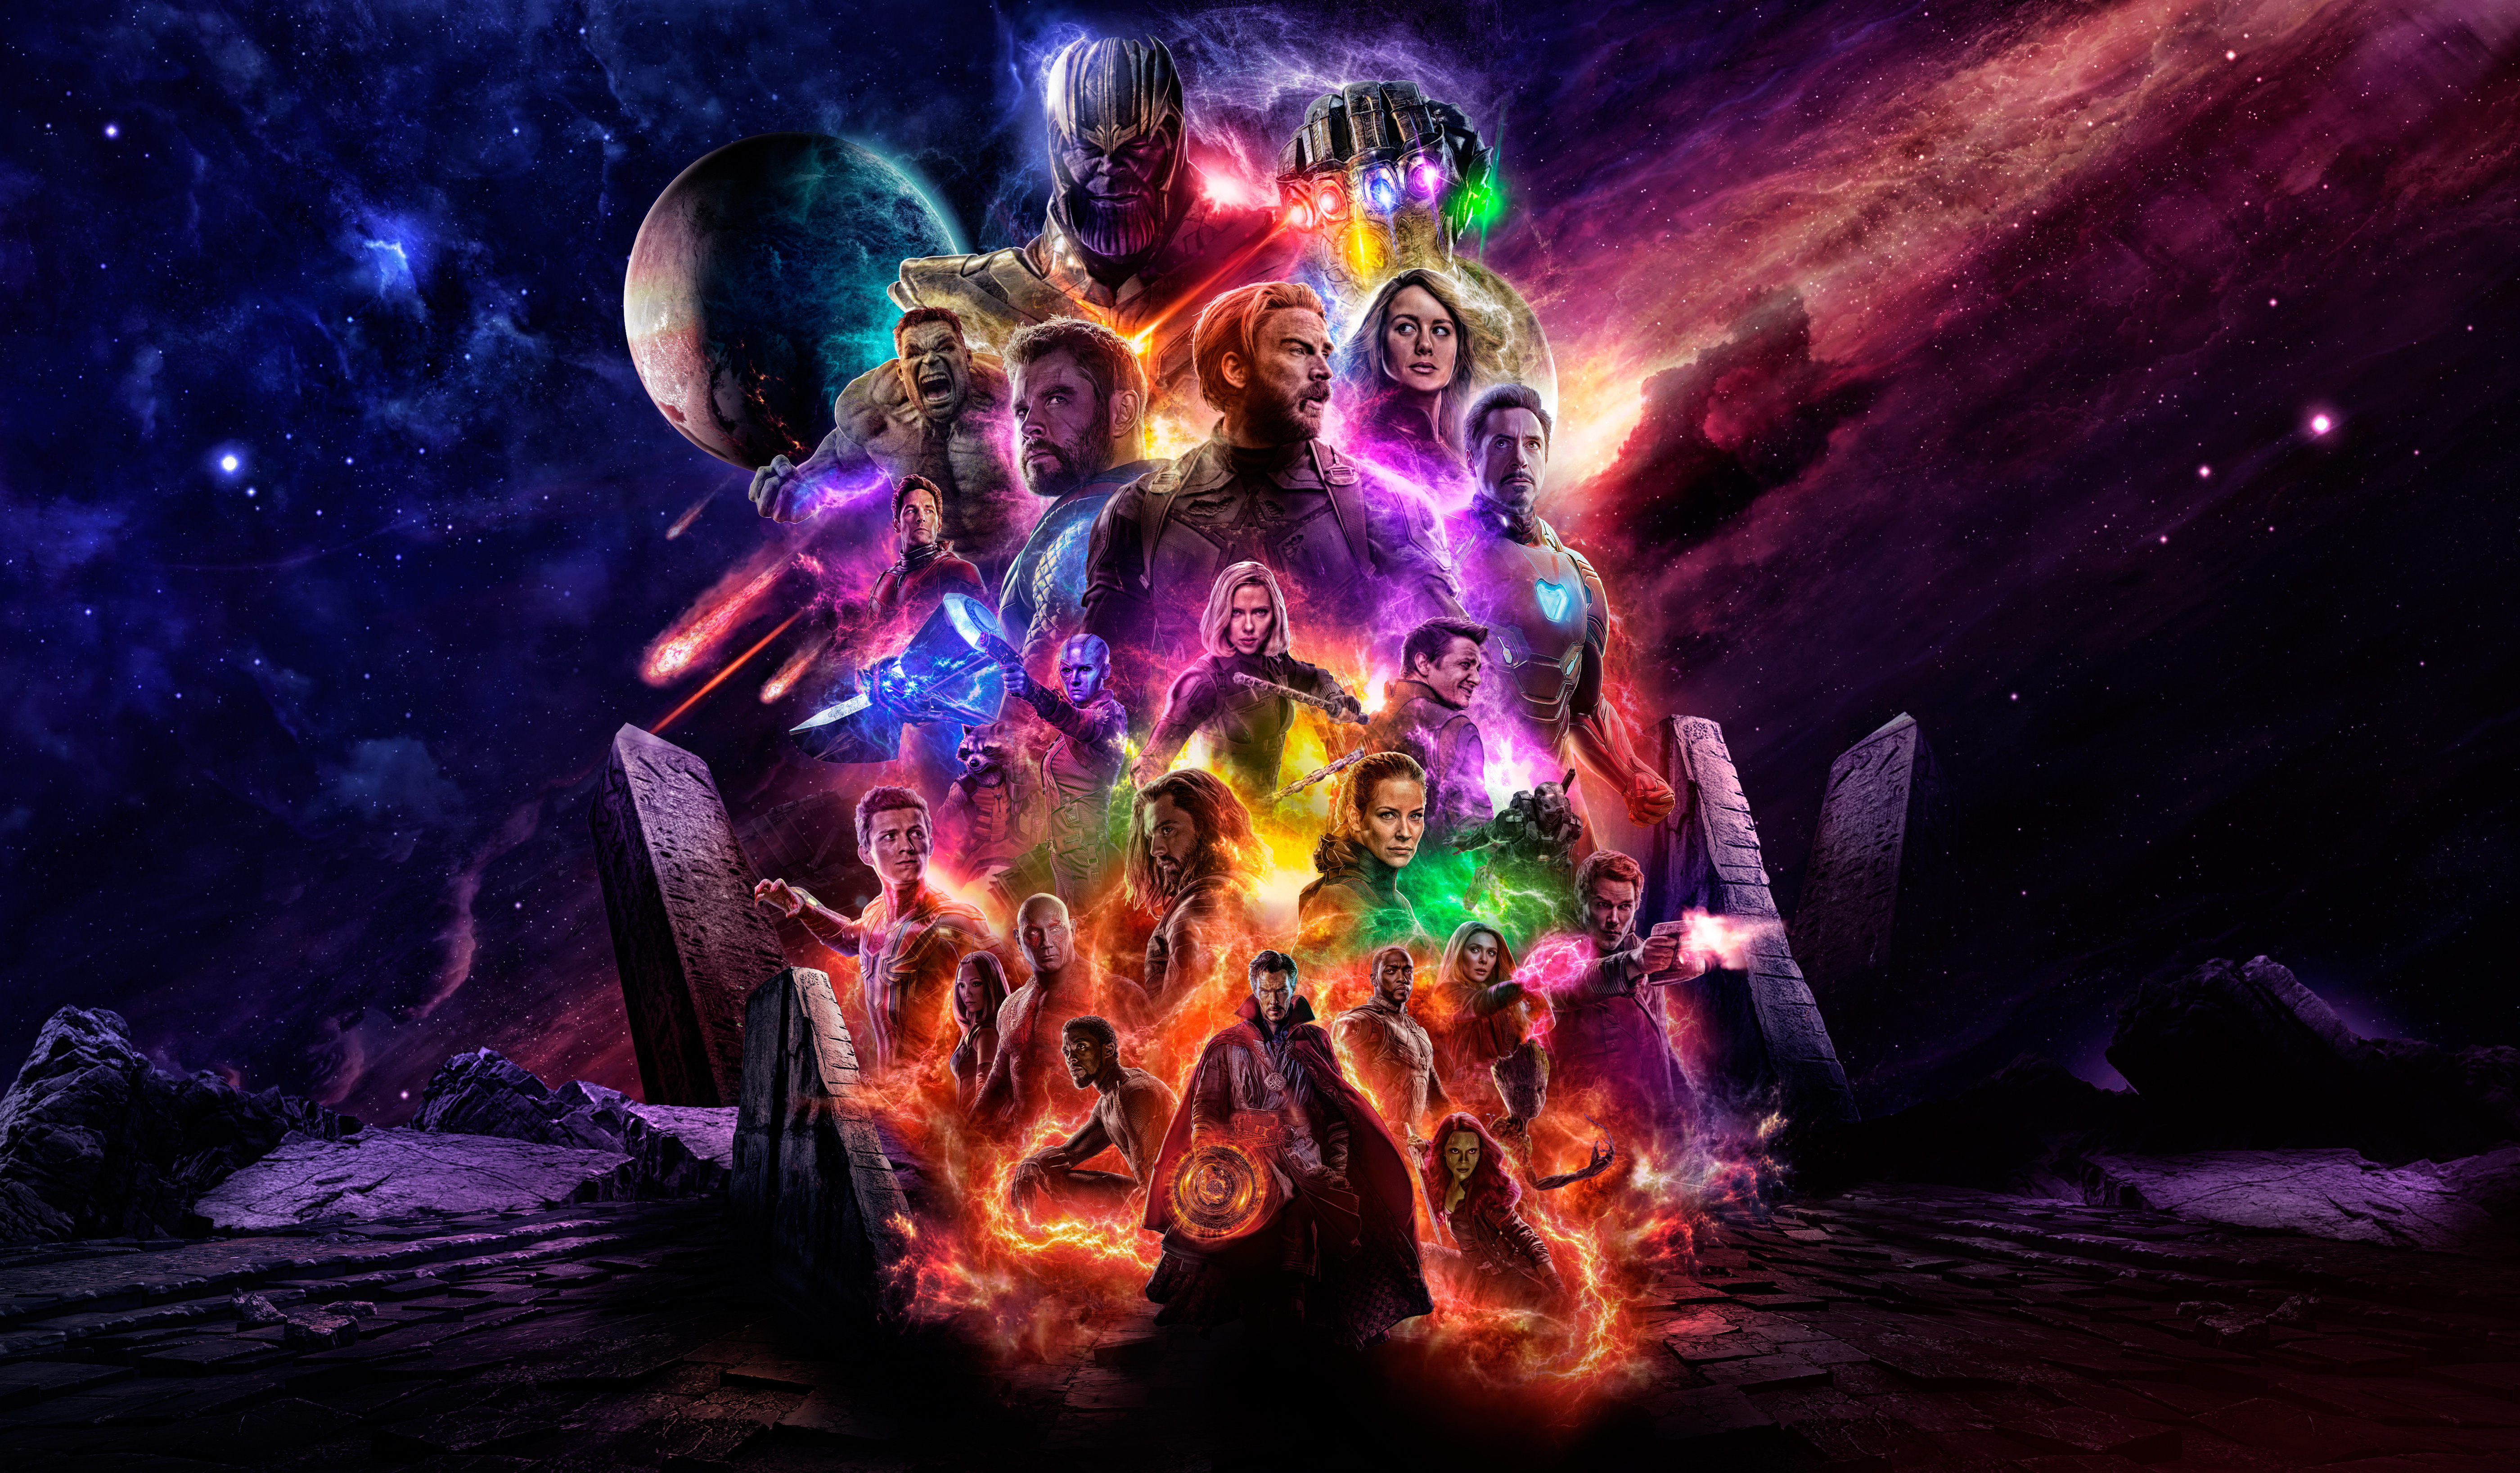 Thor Avengers Endgame Movie Wallpaper Hd - Avengers Endgame Wallpaper Hd , HD Wallpaper & Backgrounds